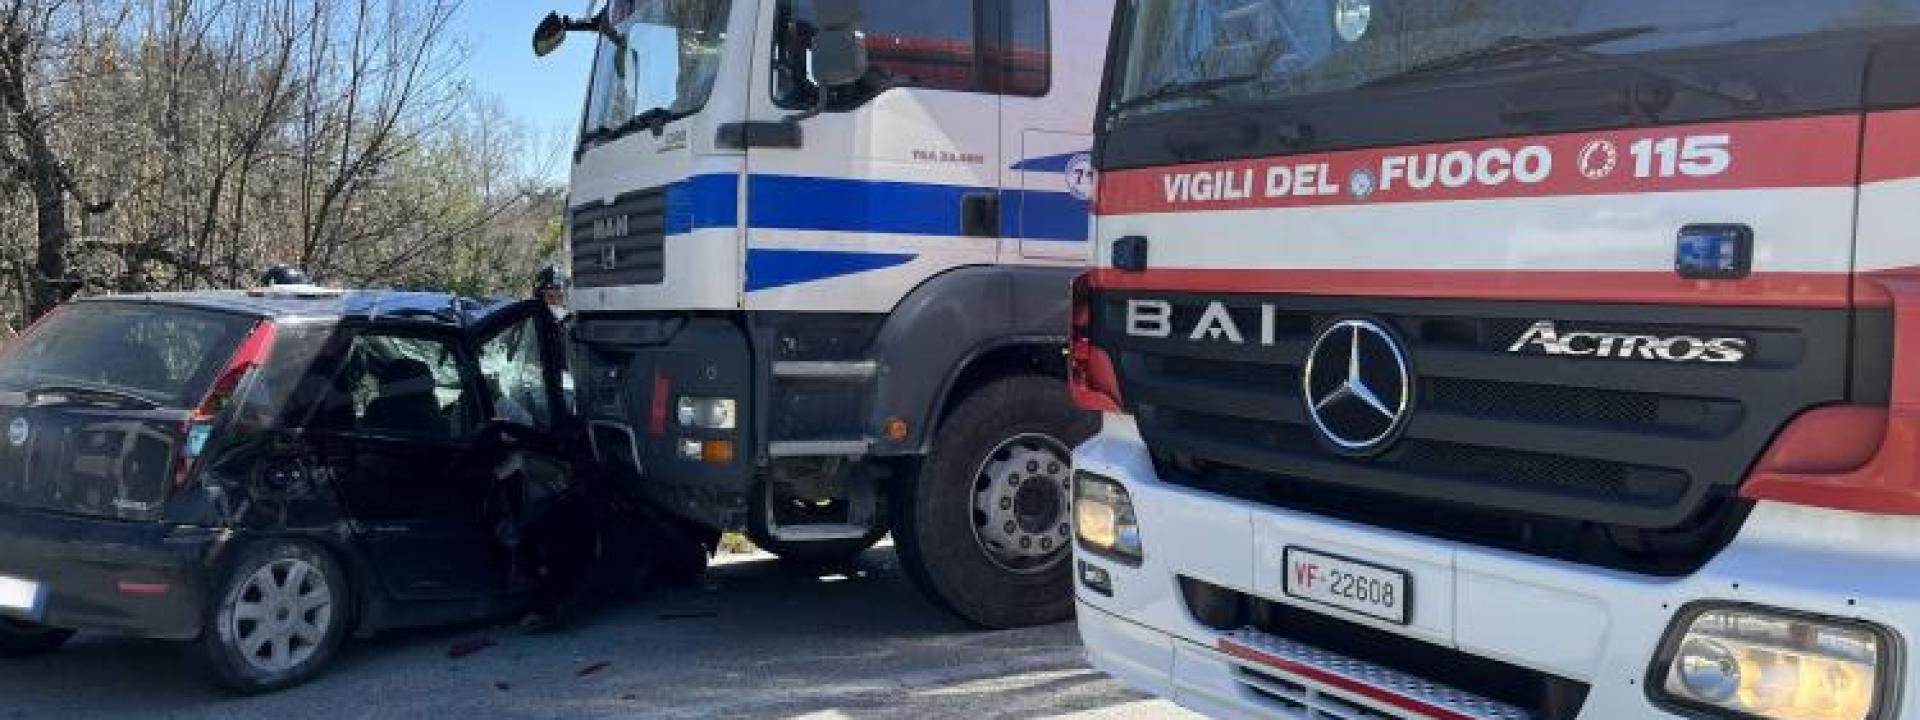 Marche - Scontro auto camion: ragazza di 28 anni portata a Torrette